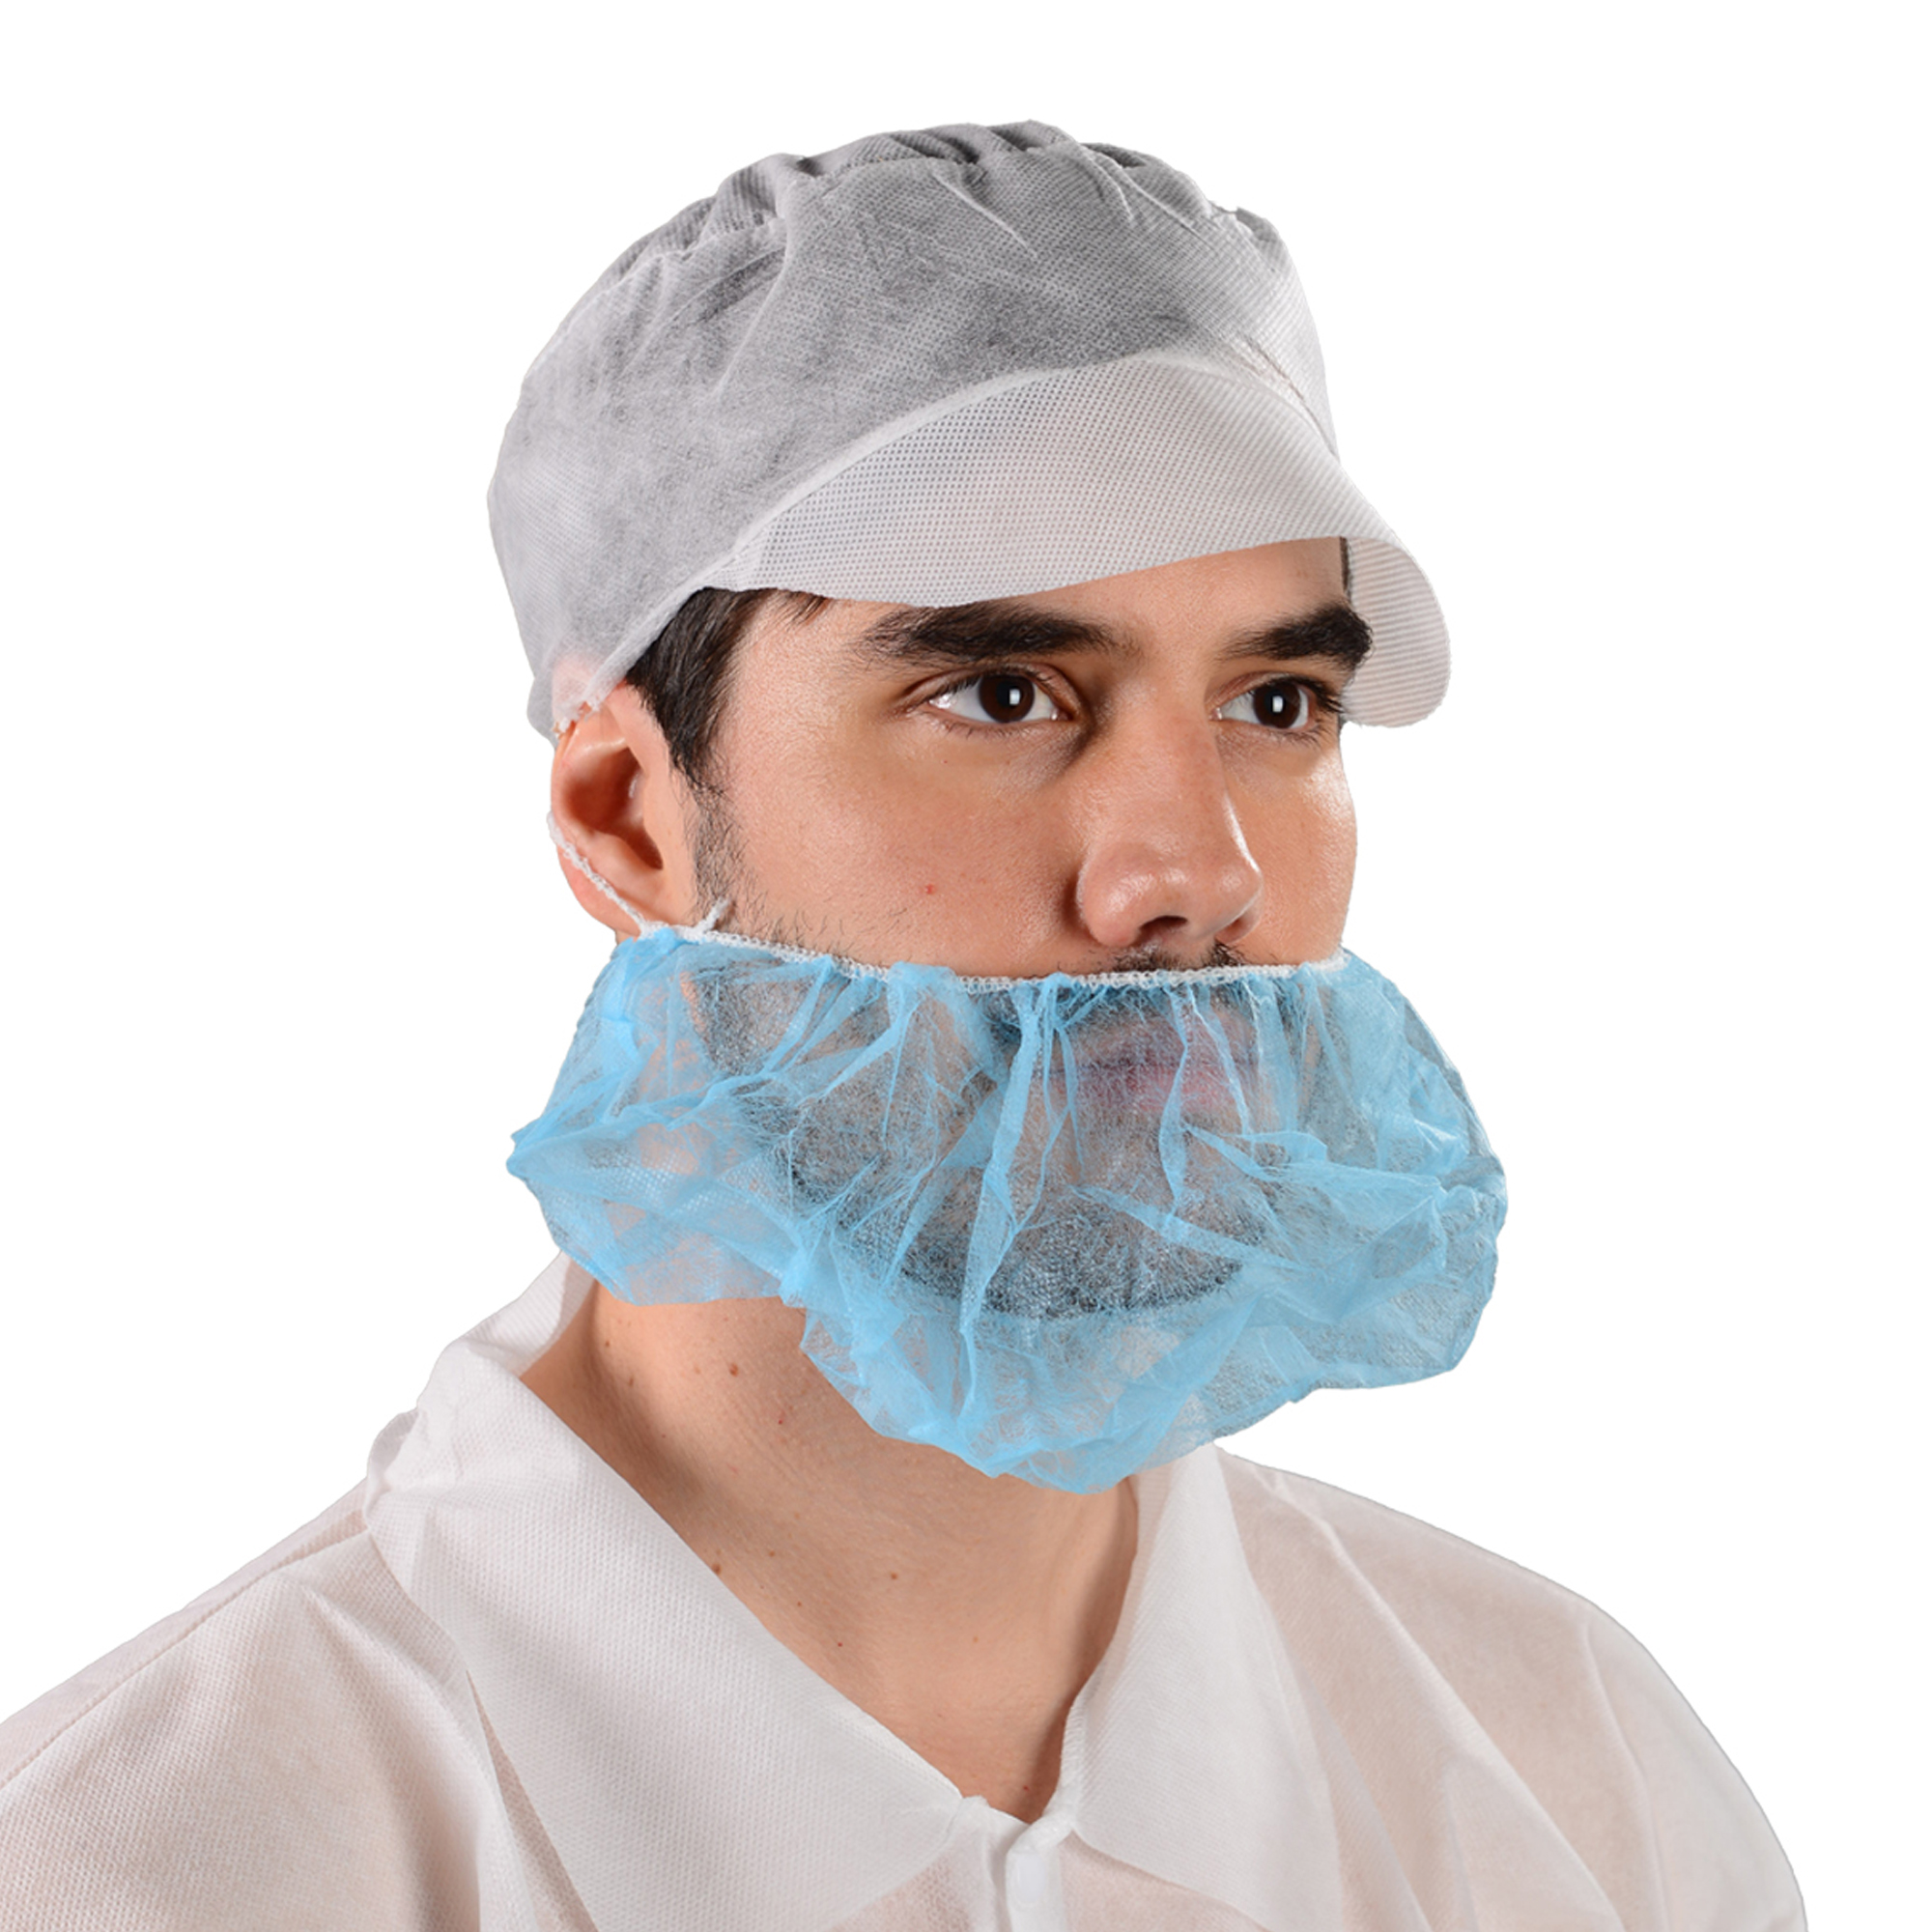 TOPMED blanco 10gsm desechable PP no tejido barba cubierta industria alimentaria solo bucle hombres con una sola costilla a prueba de polvo barba red para el cabello